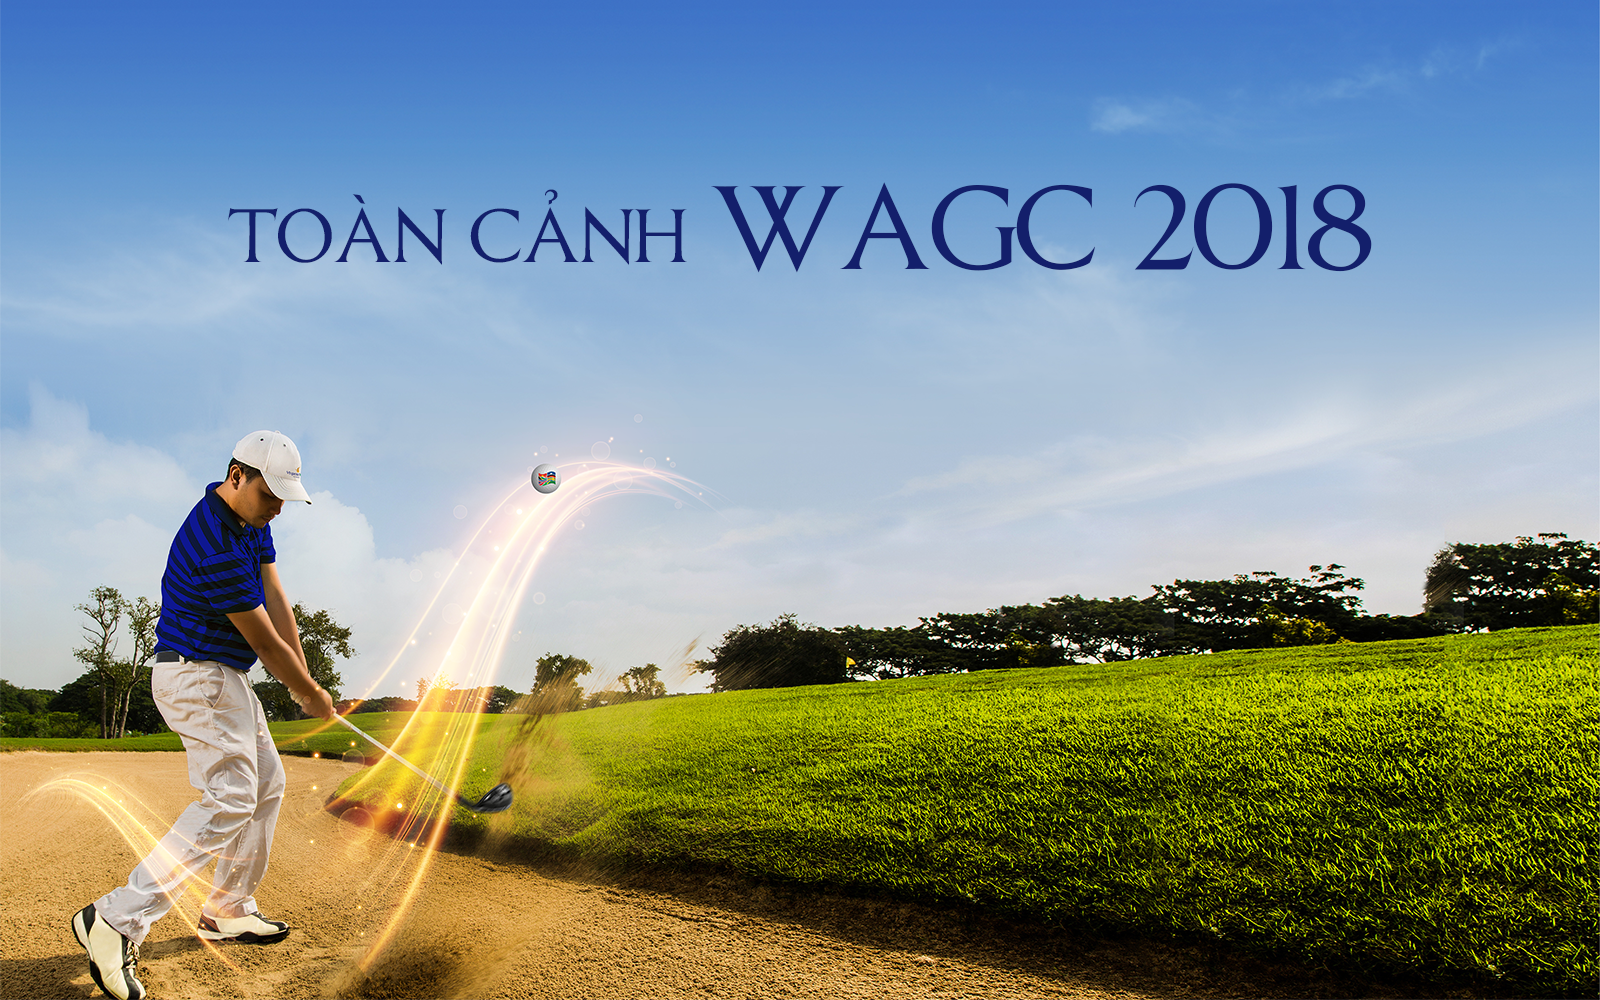 Toàn cảnh WAGC 2018 tại Malaysia: Thể lệ, địa điểm và lịch trình thi đấu